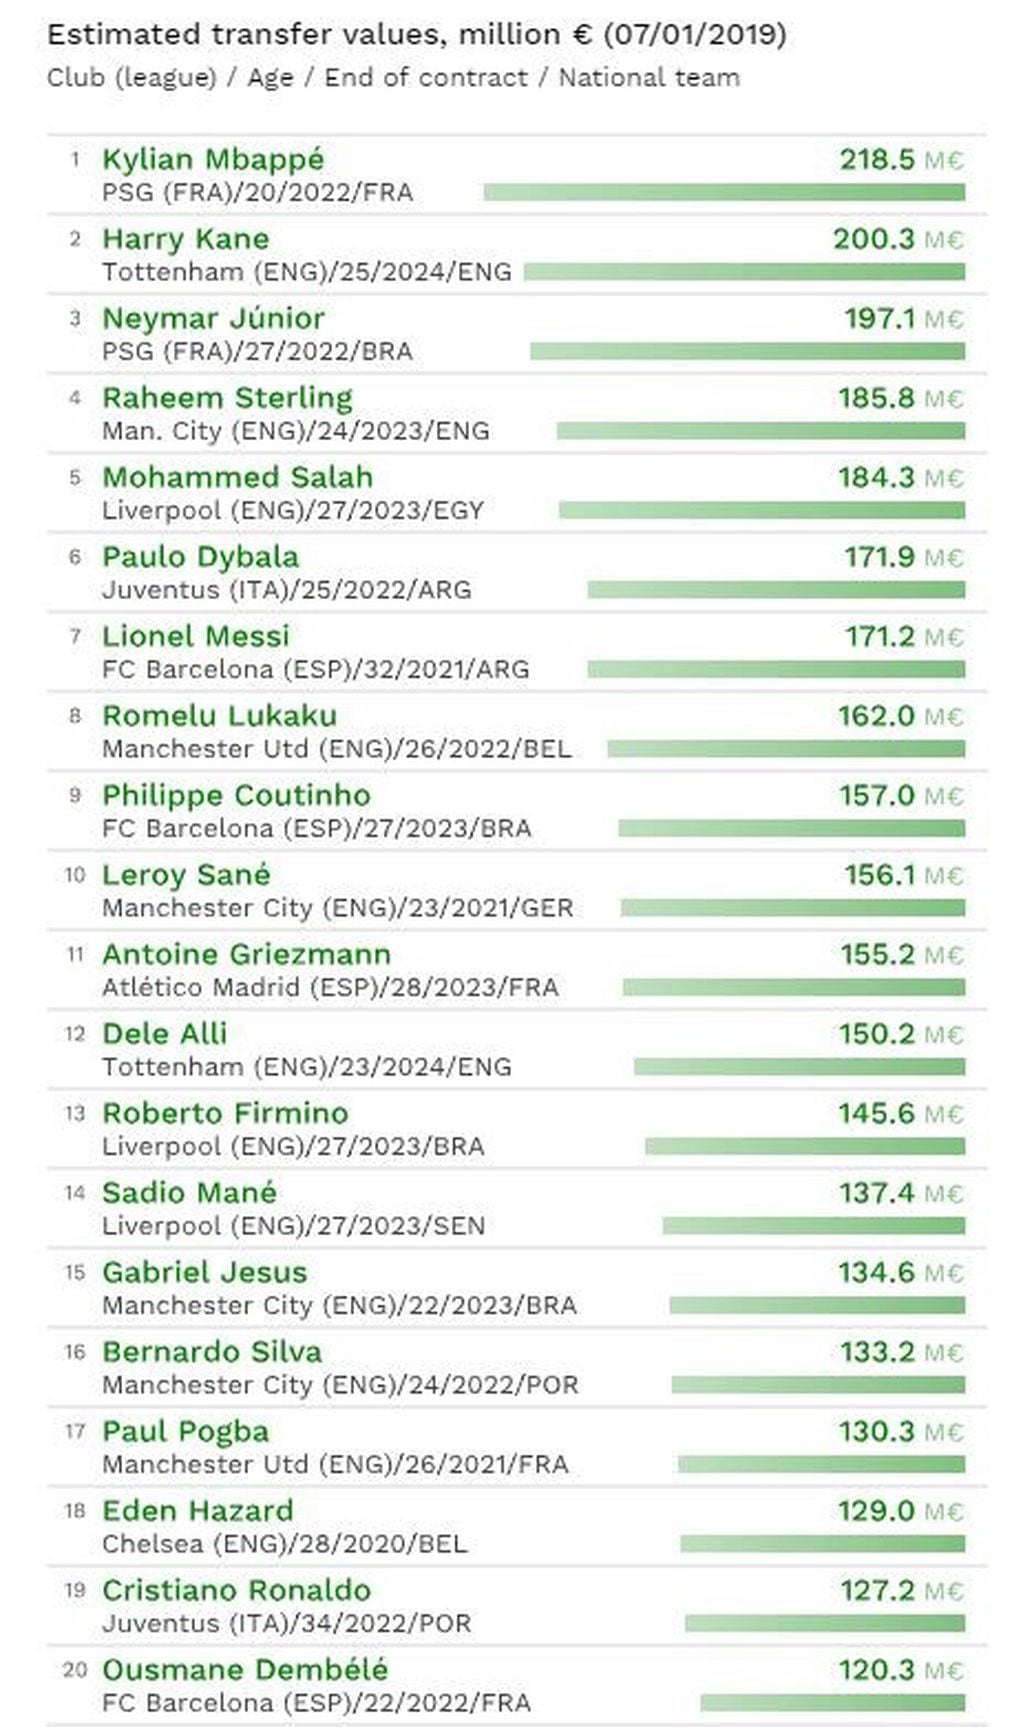 Jugadores más caros del mundo (Observatorio de Fútbol CIES).